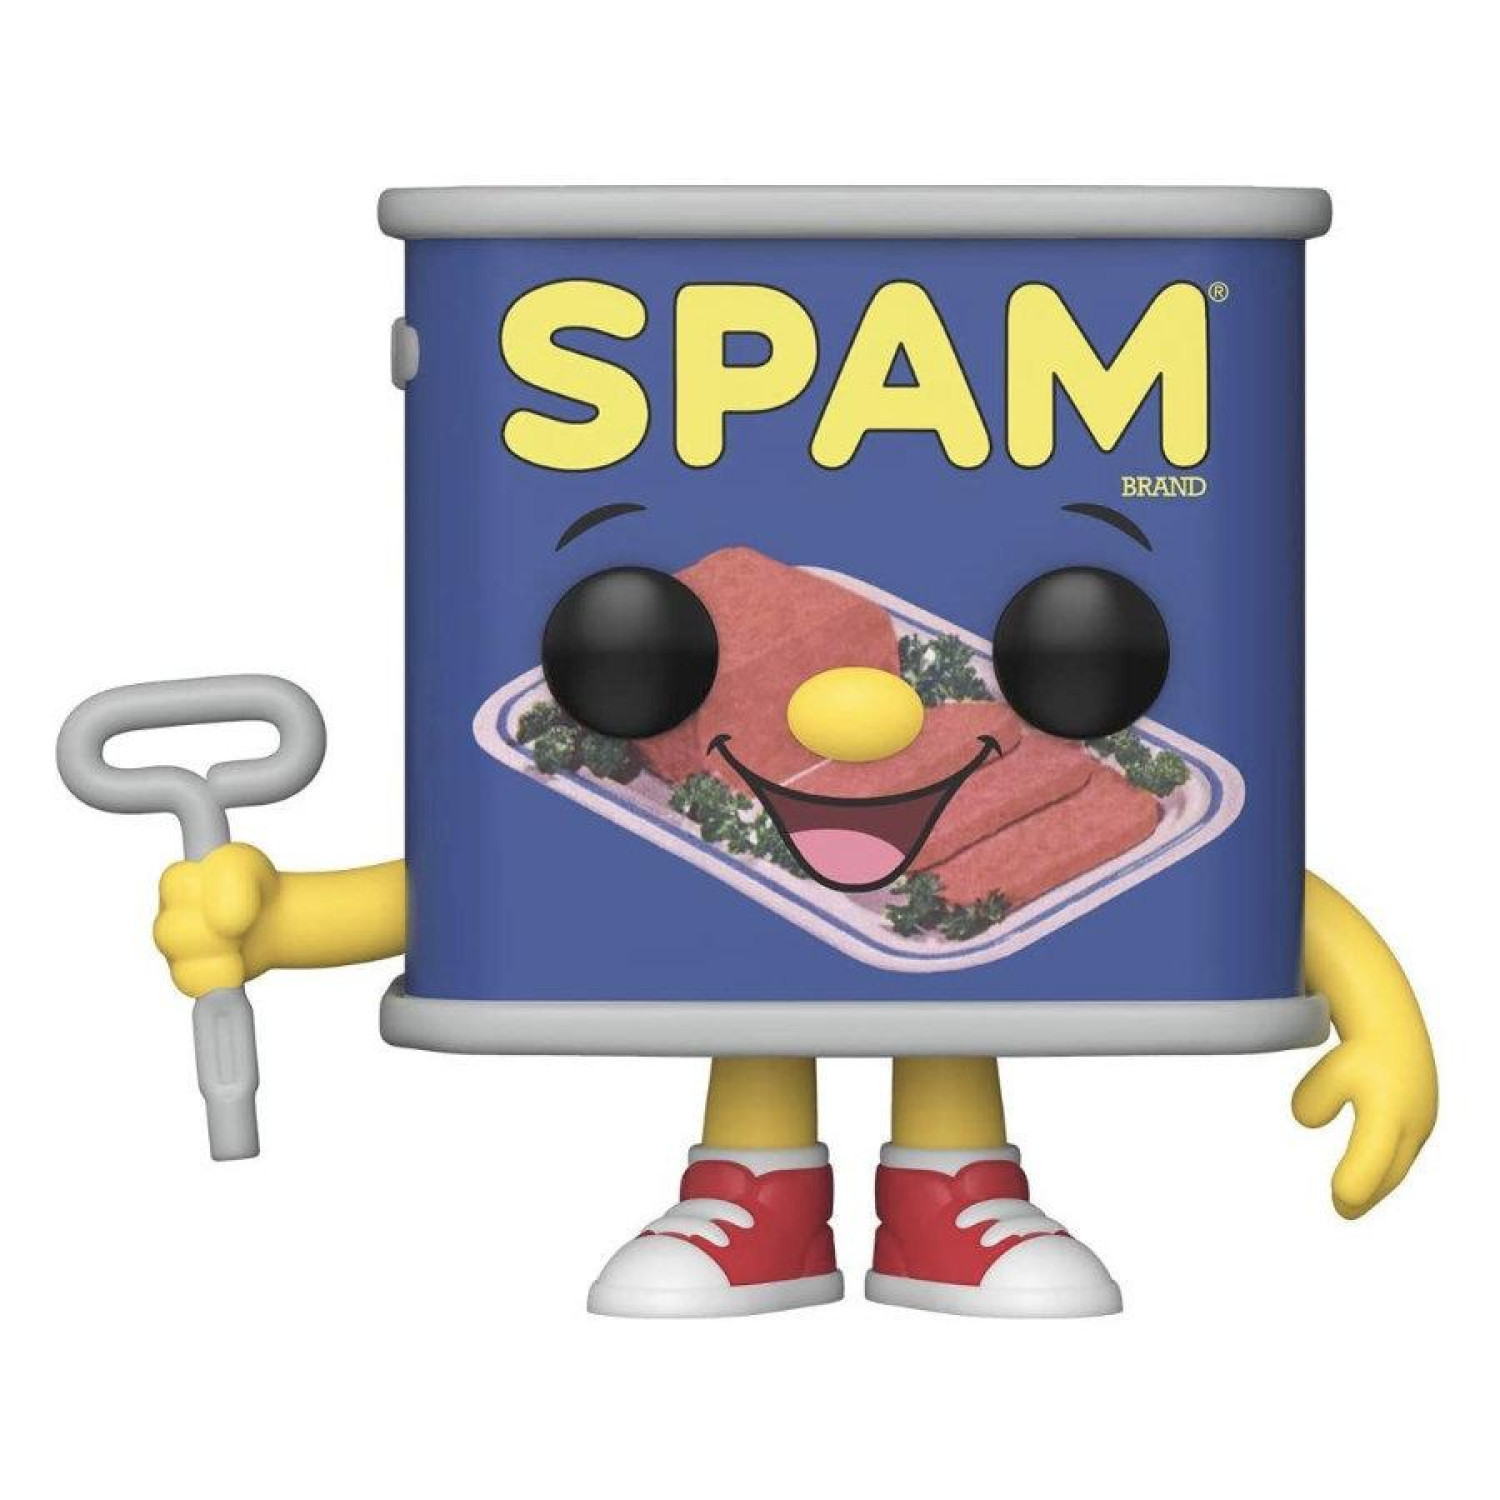 Фигурка Funko POP! Ad Icons: Spam Brand - Spam Can #80